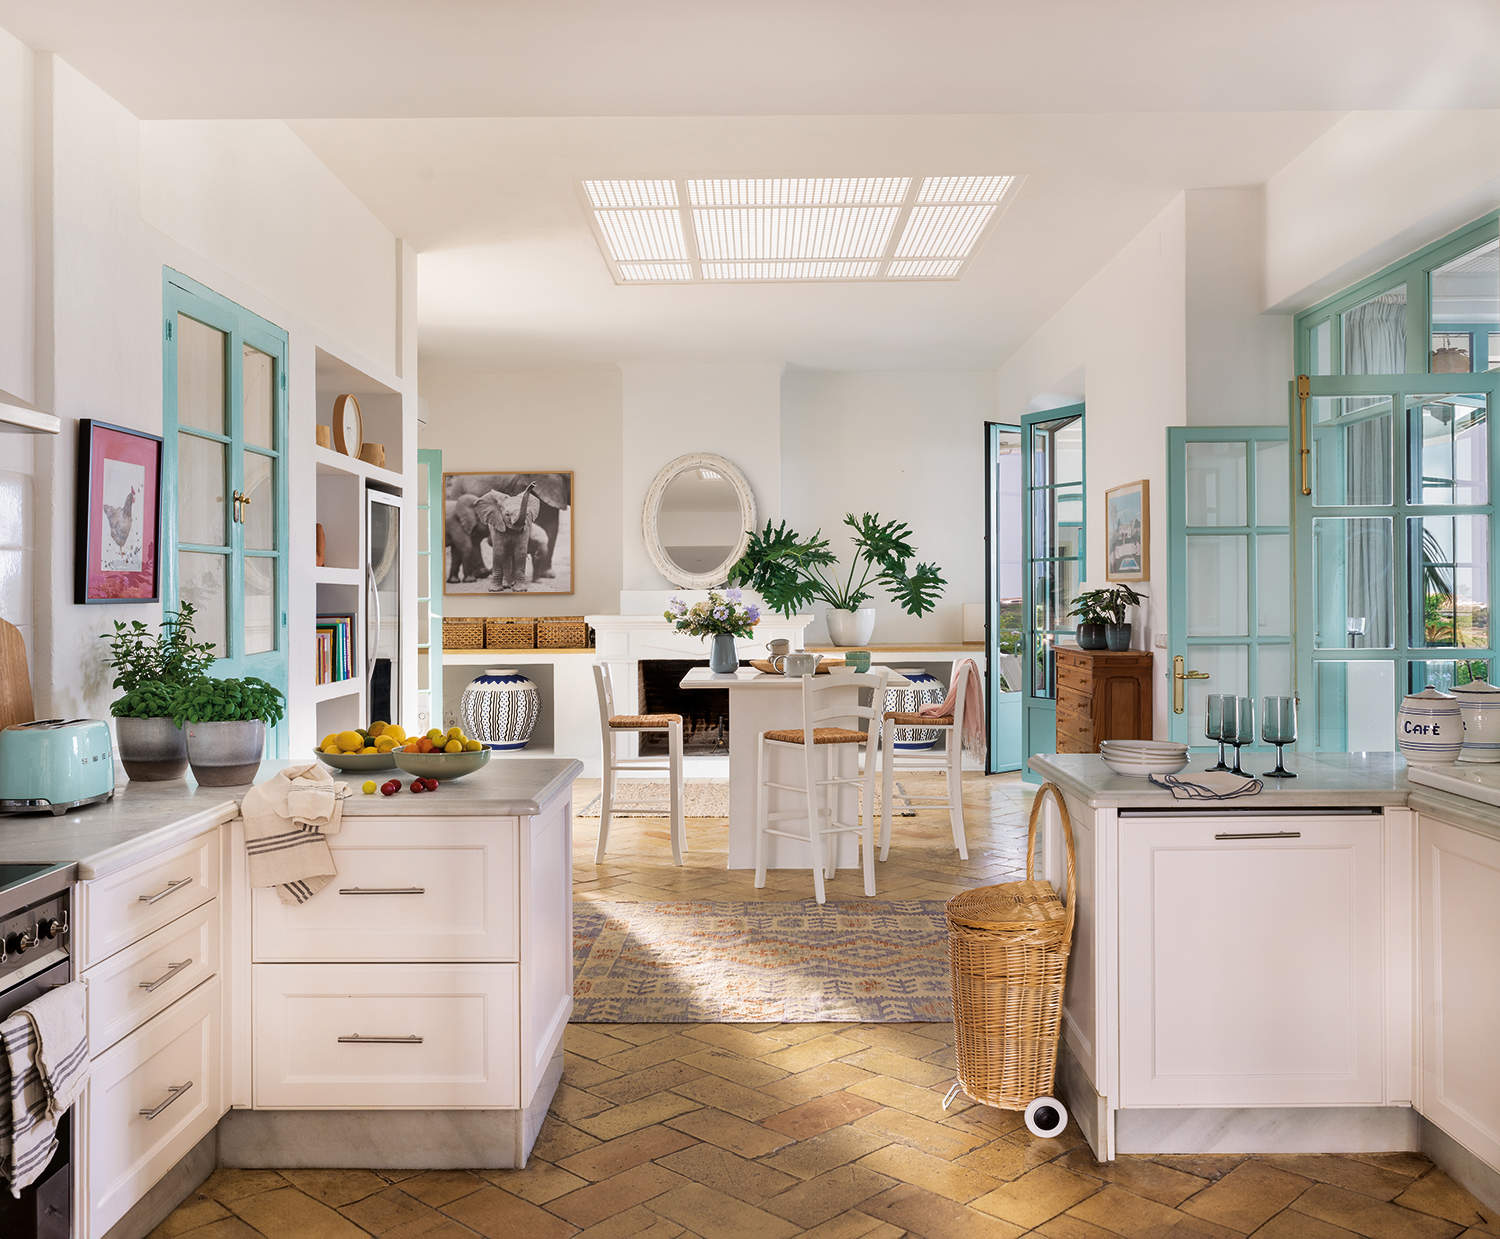 Cocina rústica moderna blanca con suelo de barro y desayunador con sillas altas, carpintería azul